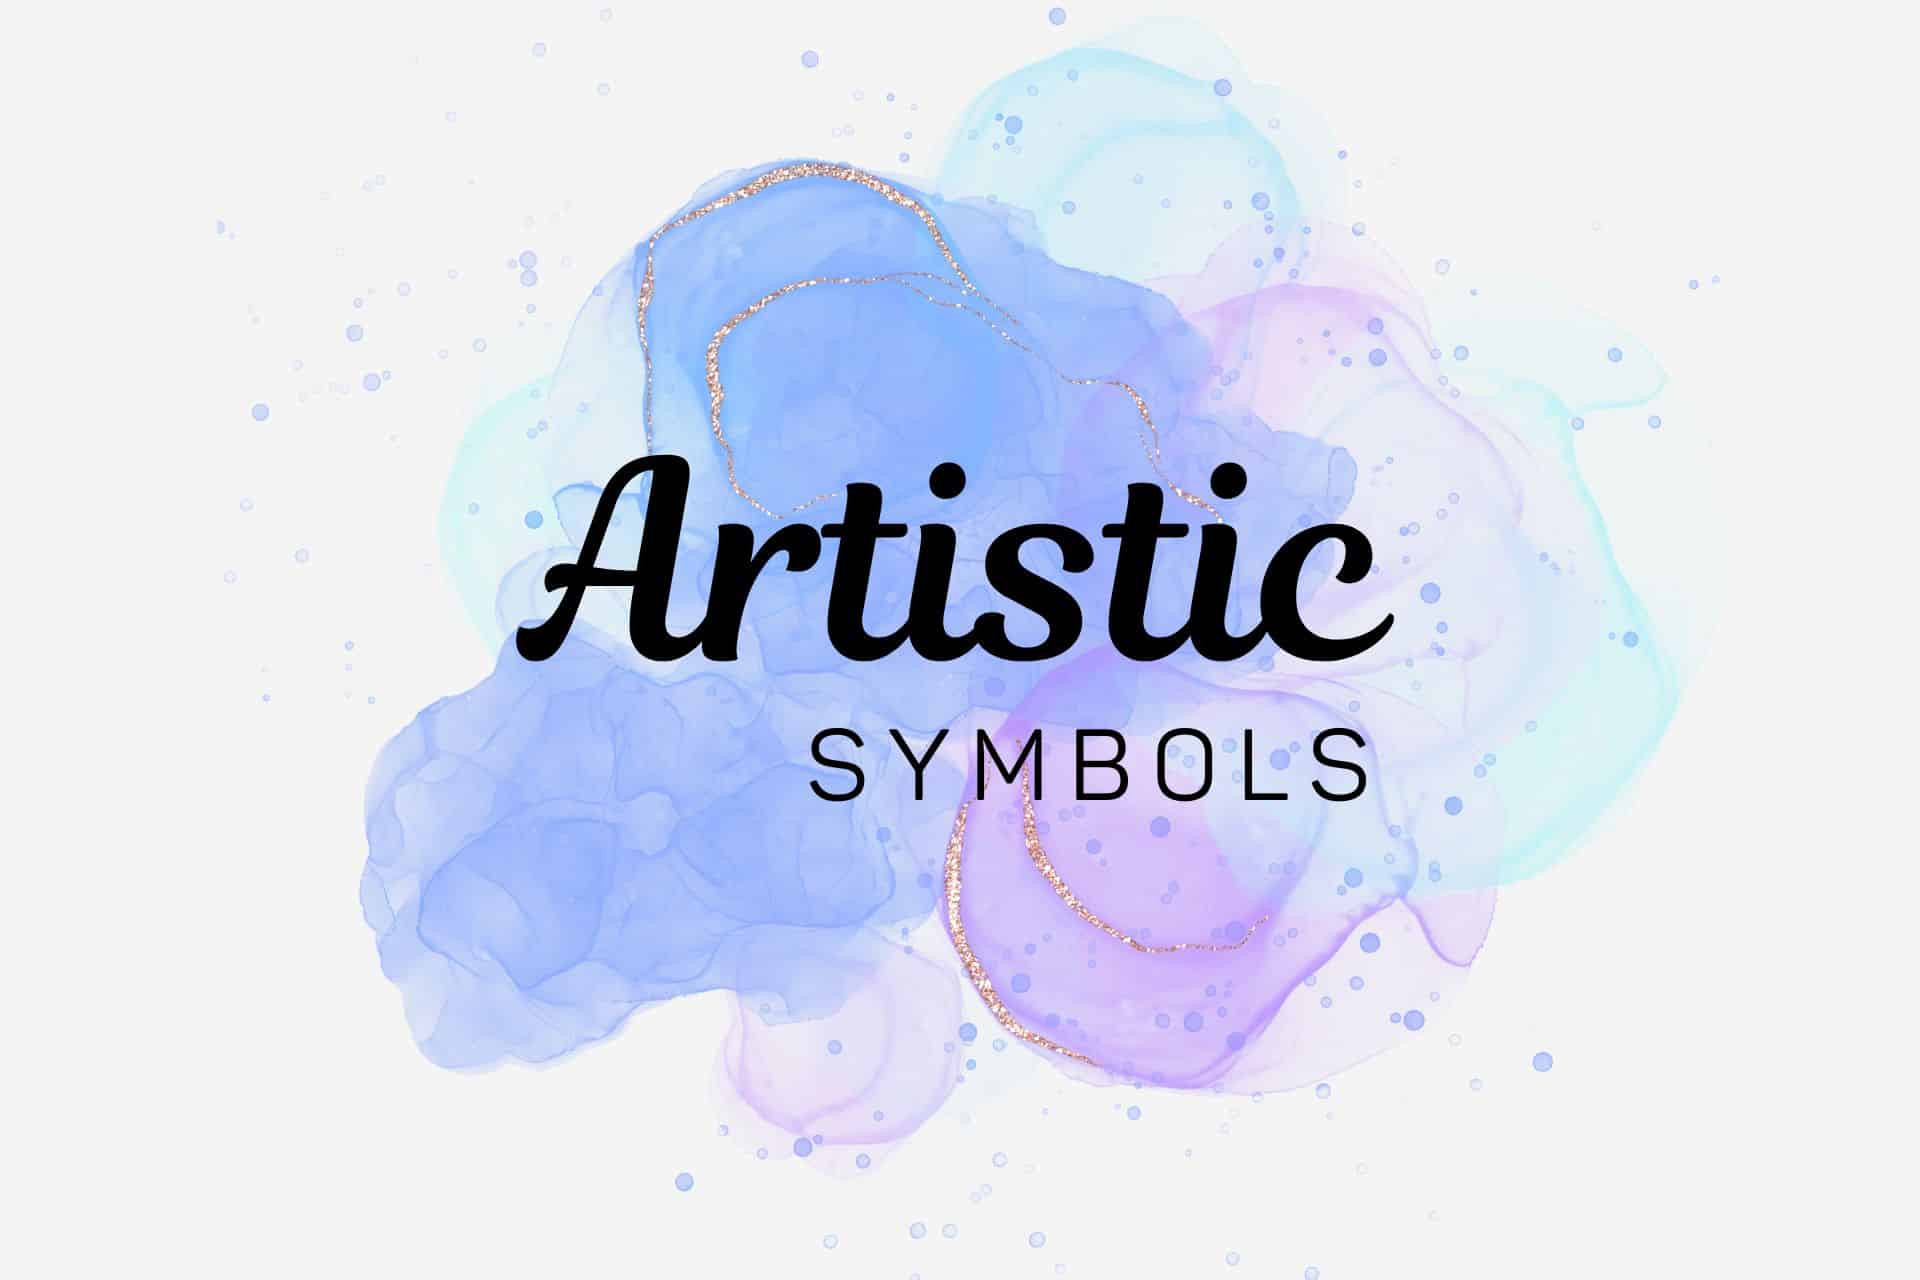 Artistic symbols